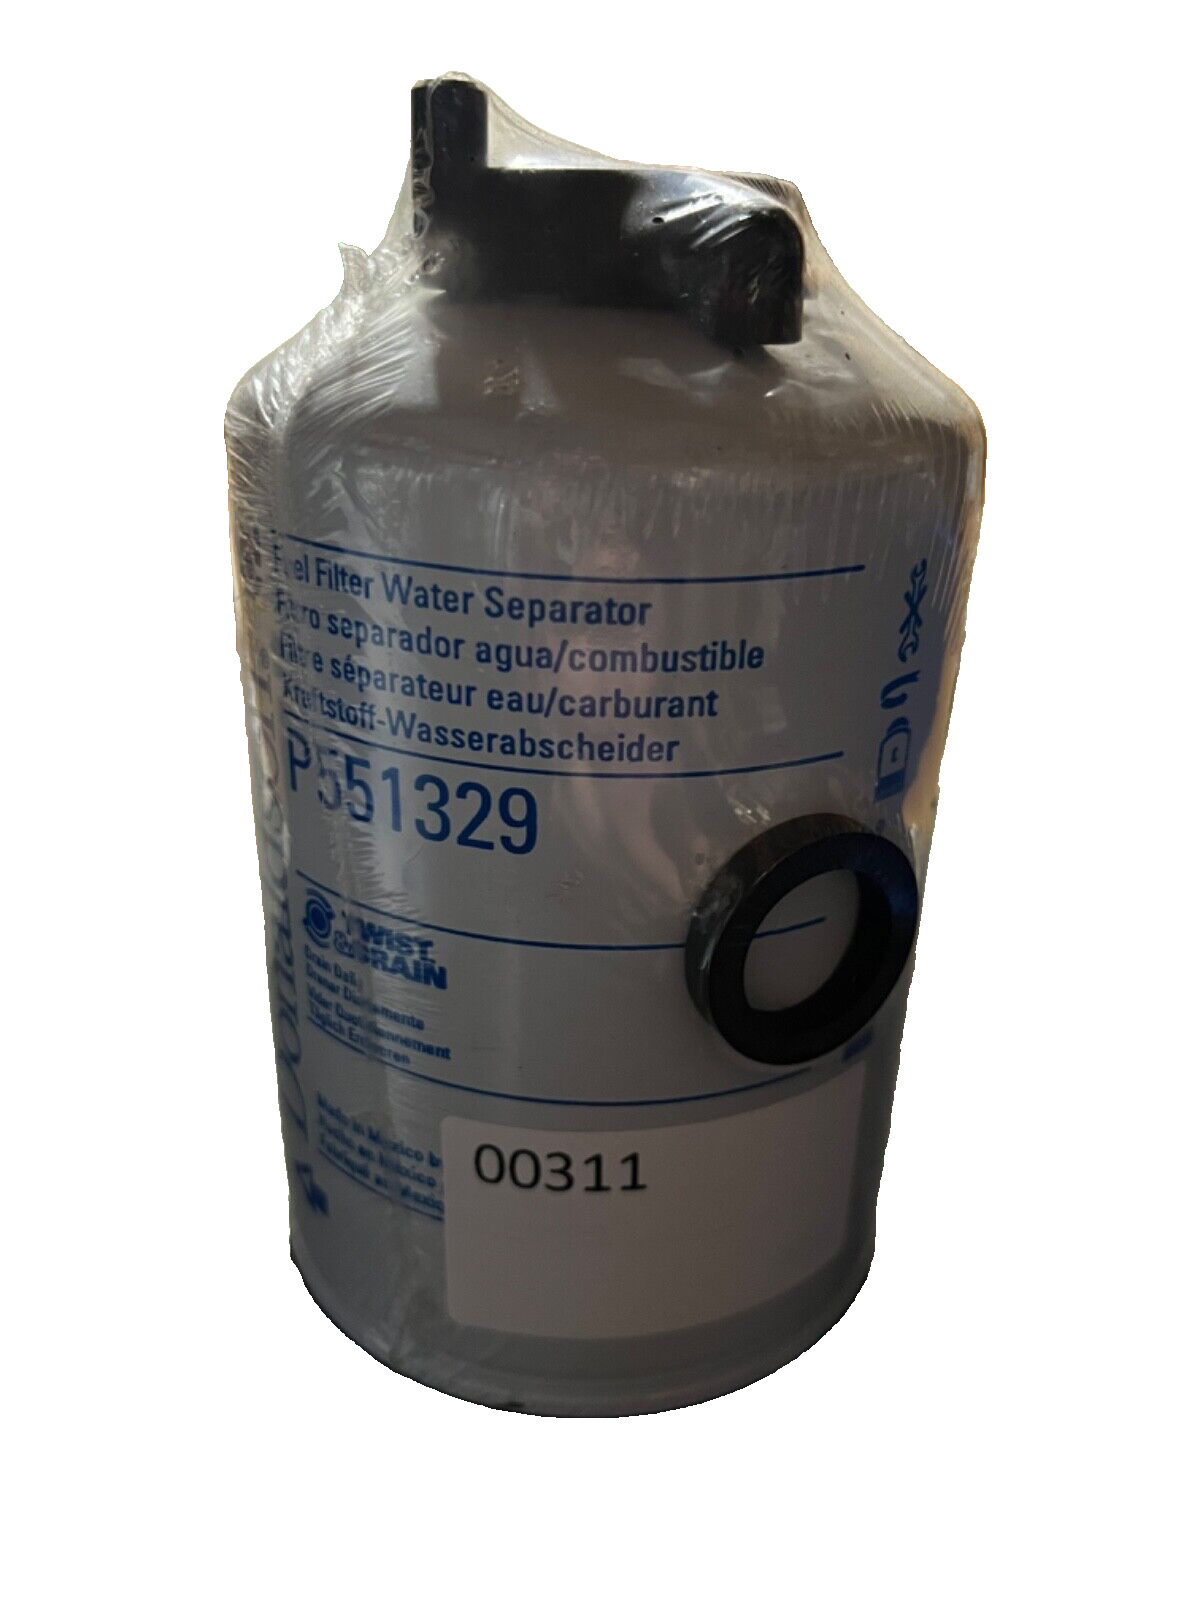 Donaldson Fuel Water Separator Filter P551329 **NOS**